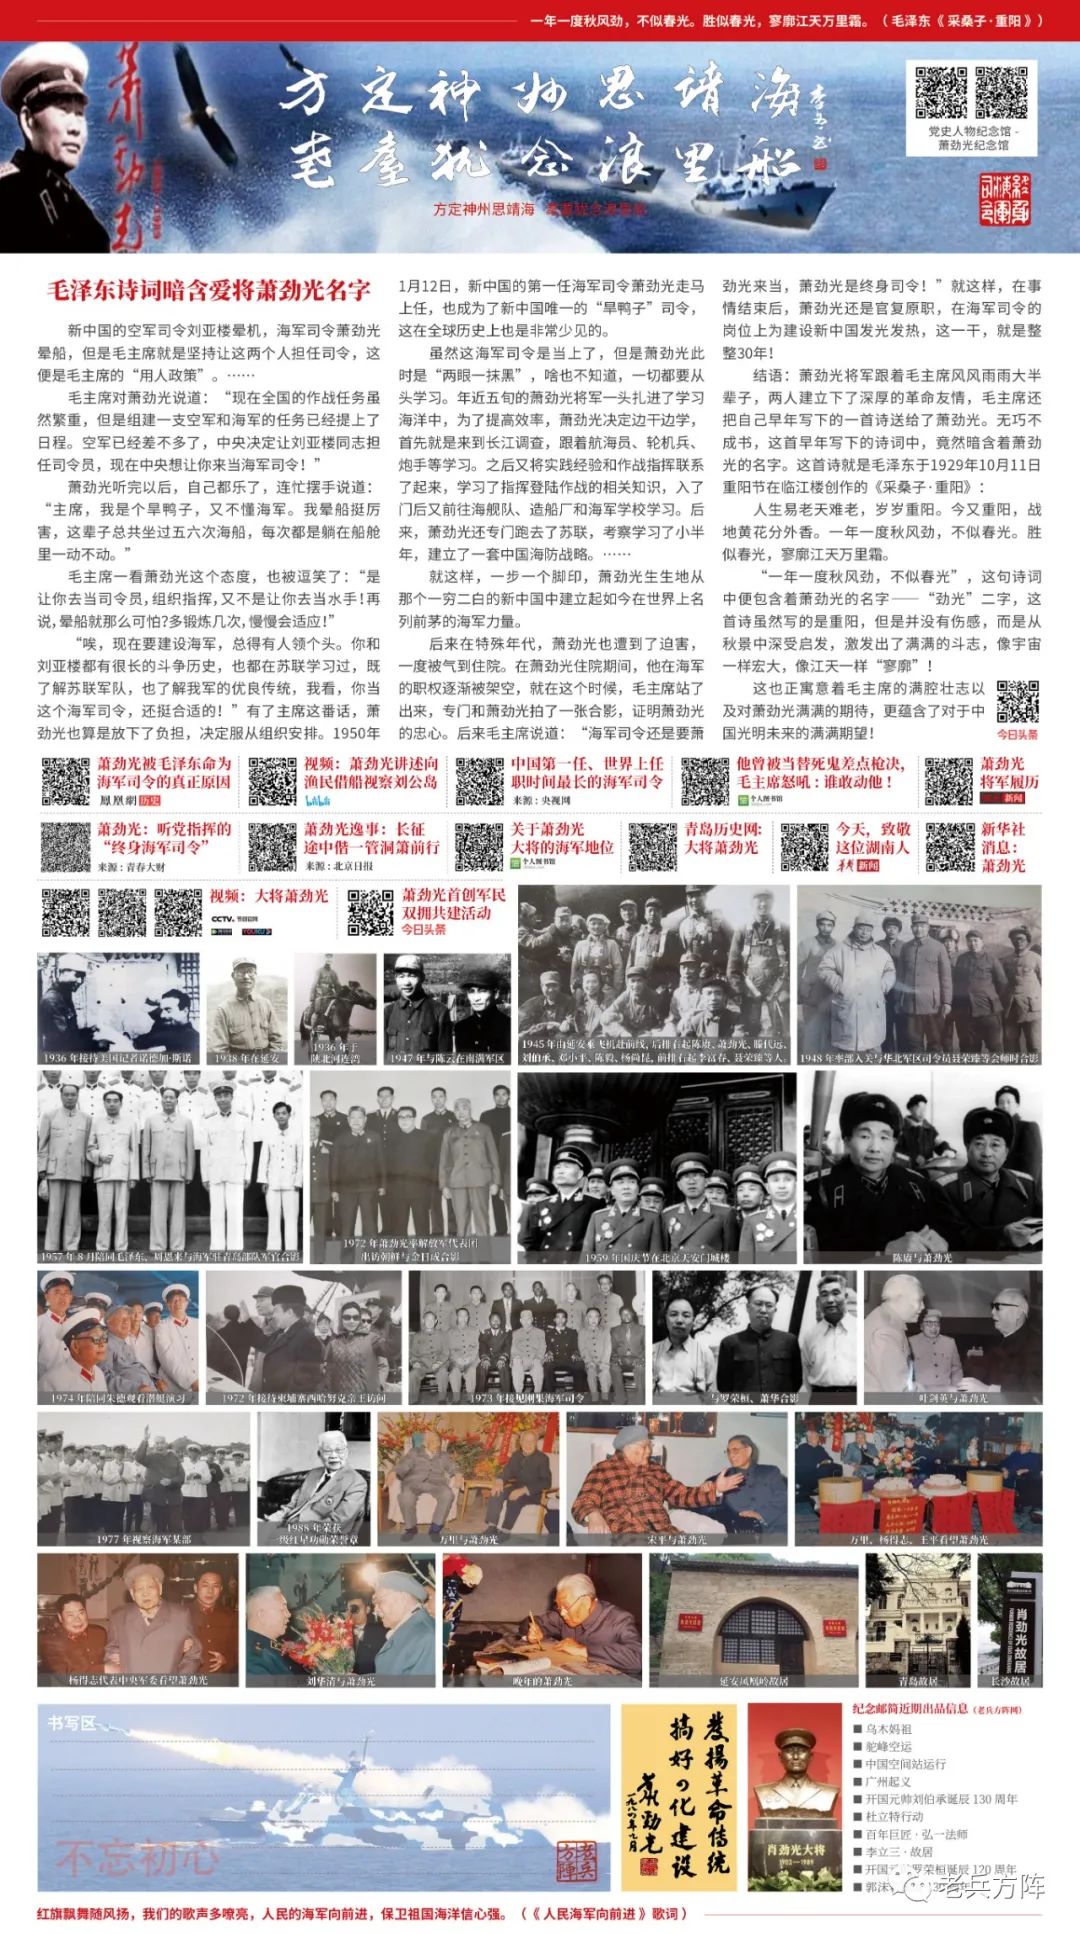 《开国大将萧劲光诞辰120周年》纪念邮简于4月23日海军建军节悄然亮相